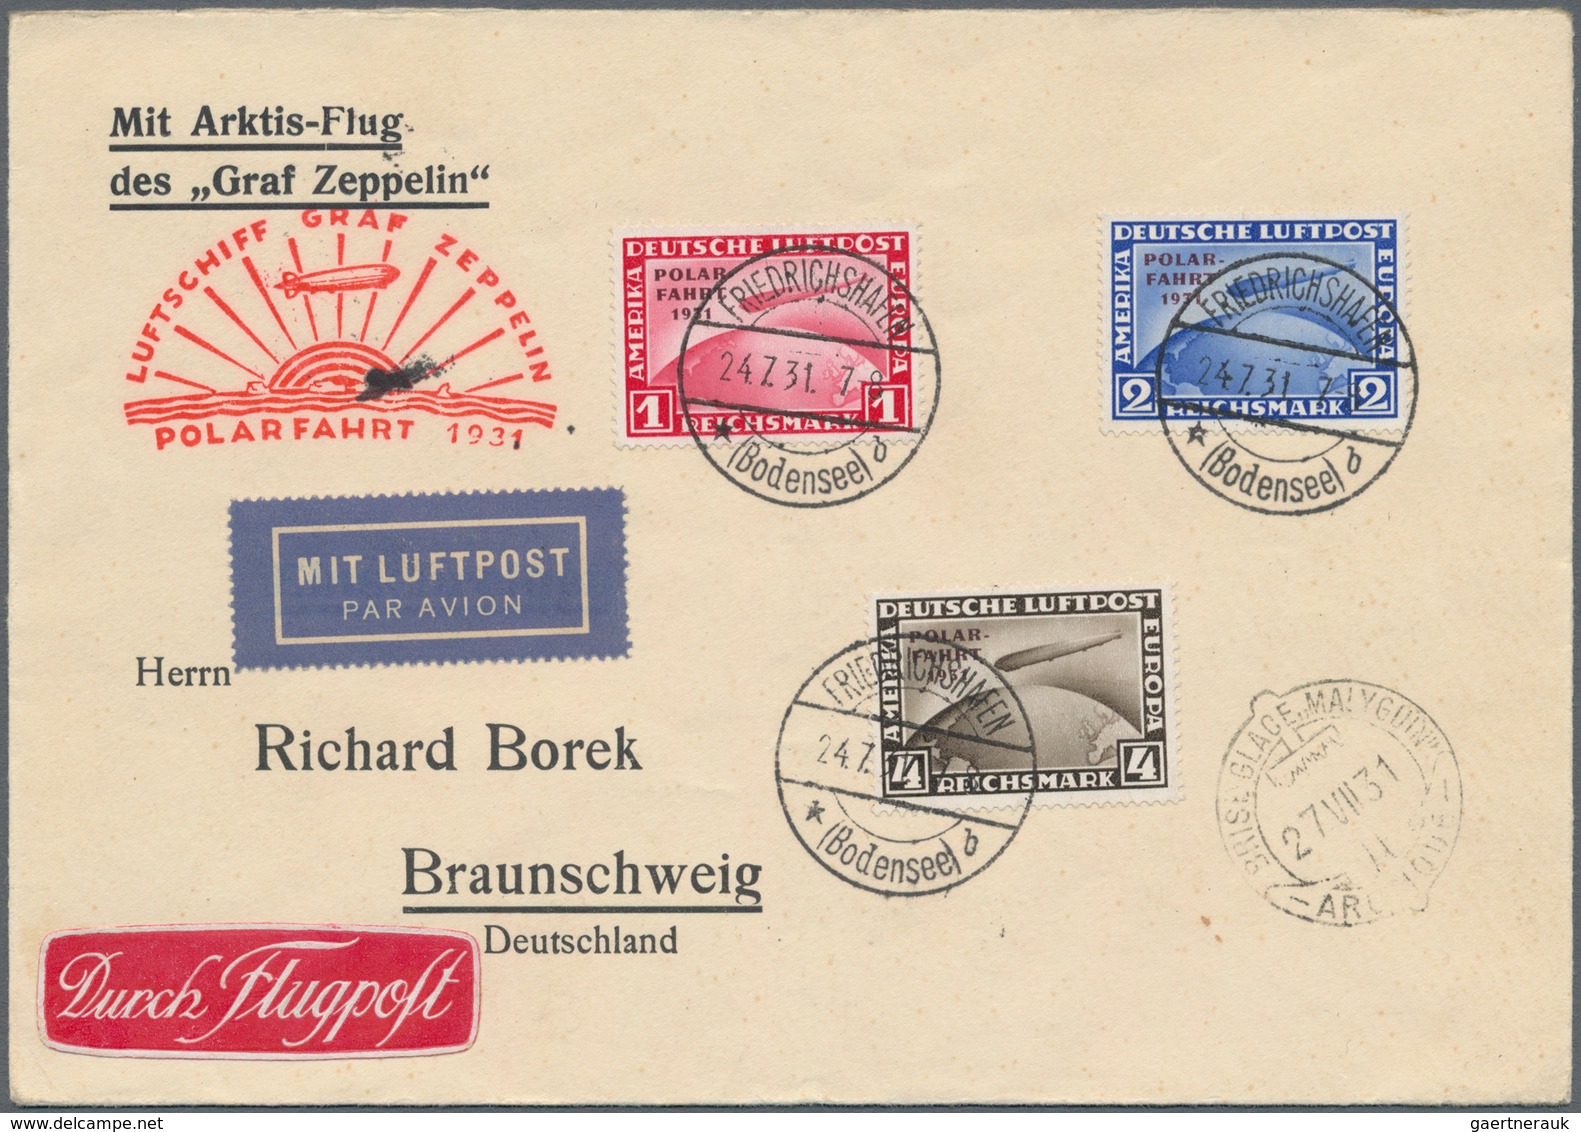 Deutsches Reich - Weimar: 1931 Zeppelin-Polarfahrt: Kompletter Satz auf Polarfahrt-Umschlag von Frie